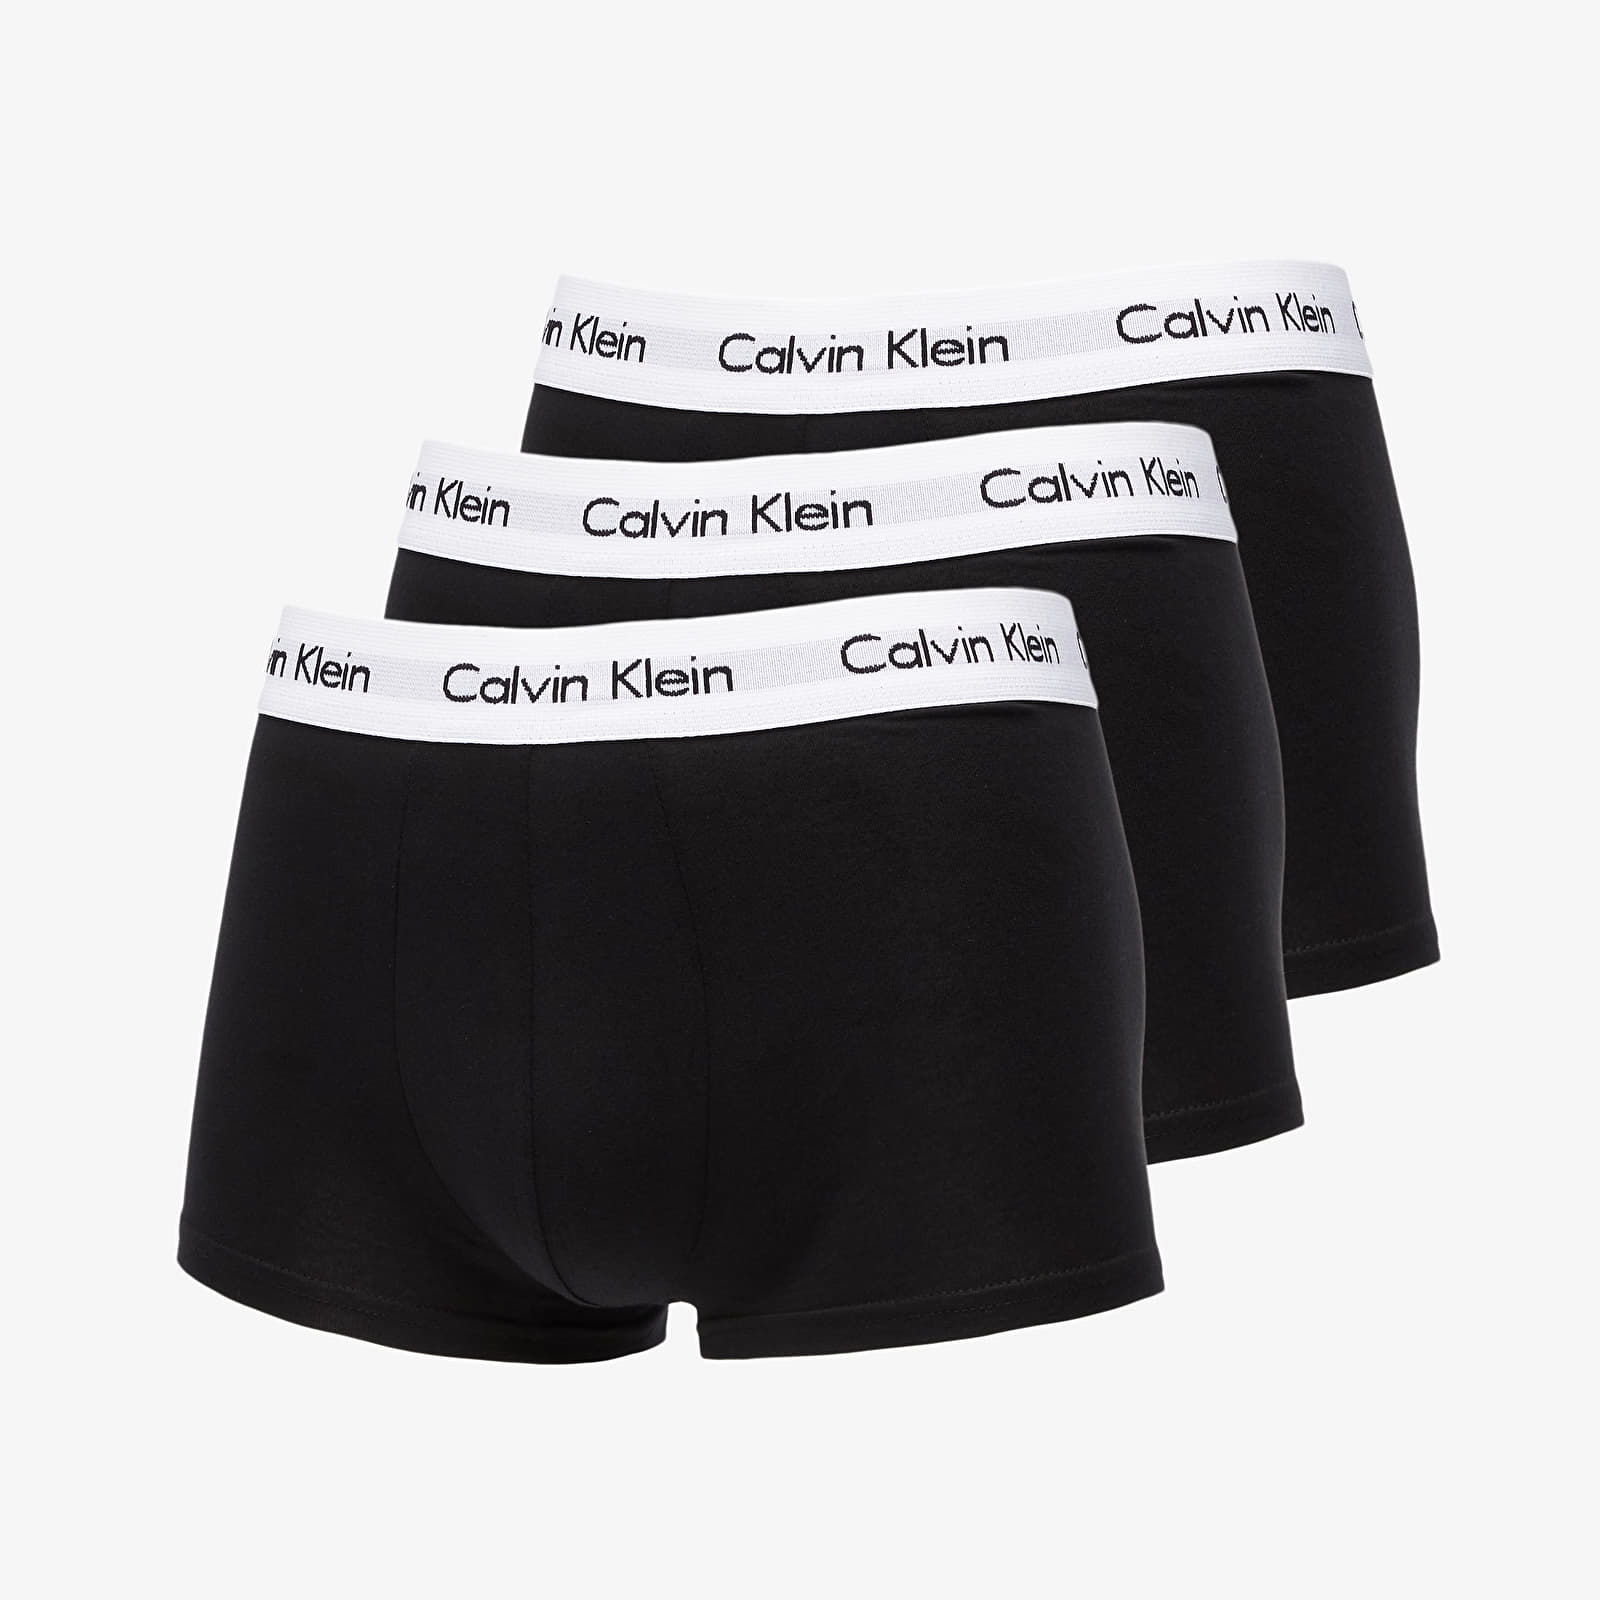 Les troncs Calvin Klein Low Rise Trunks 3 Pack Black